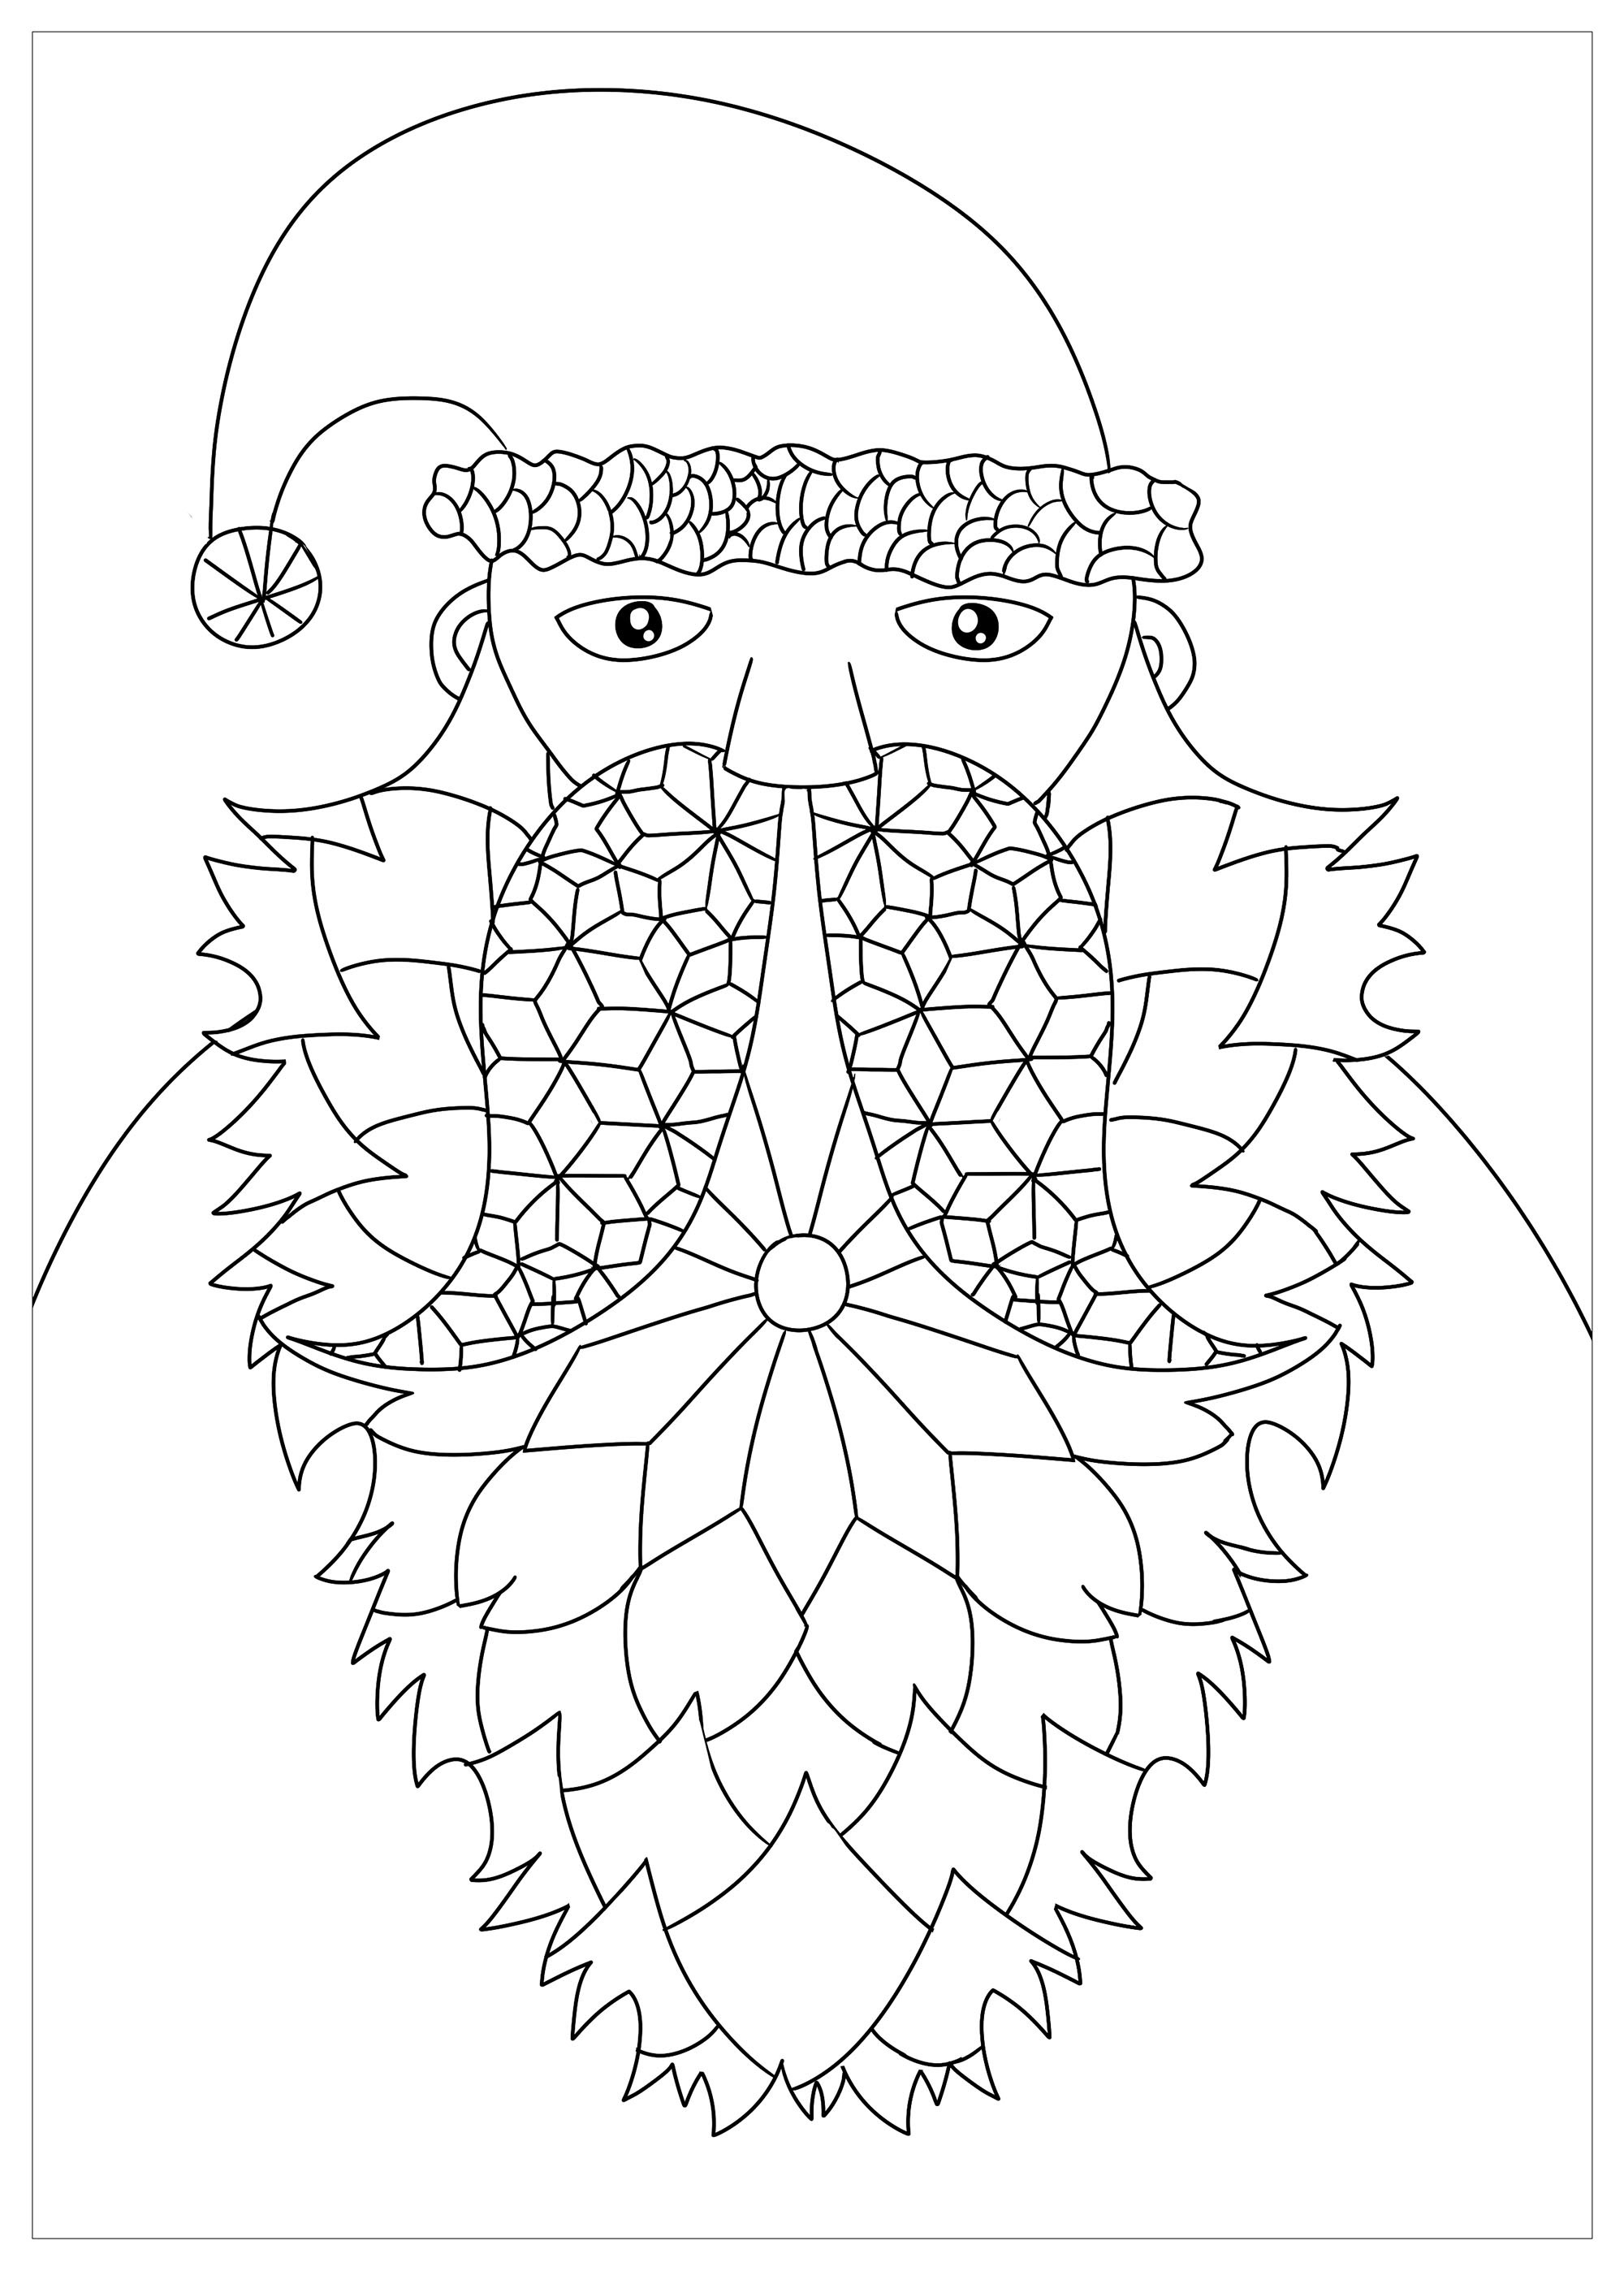 Simple Santa Claus coloring page